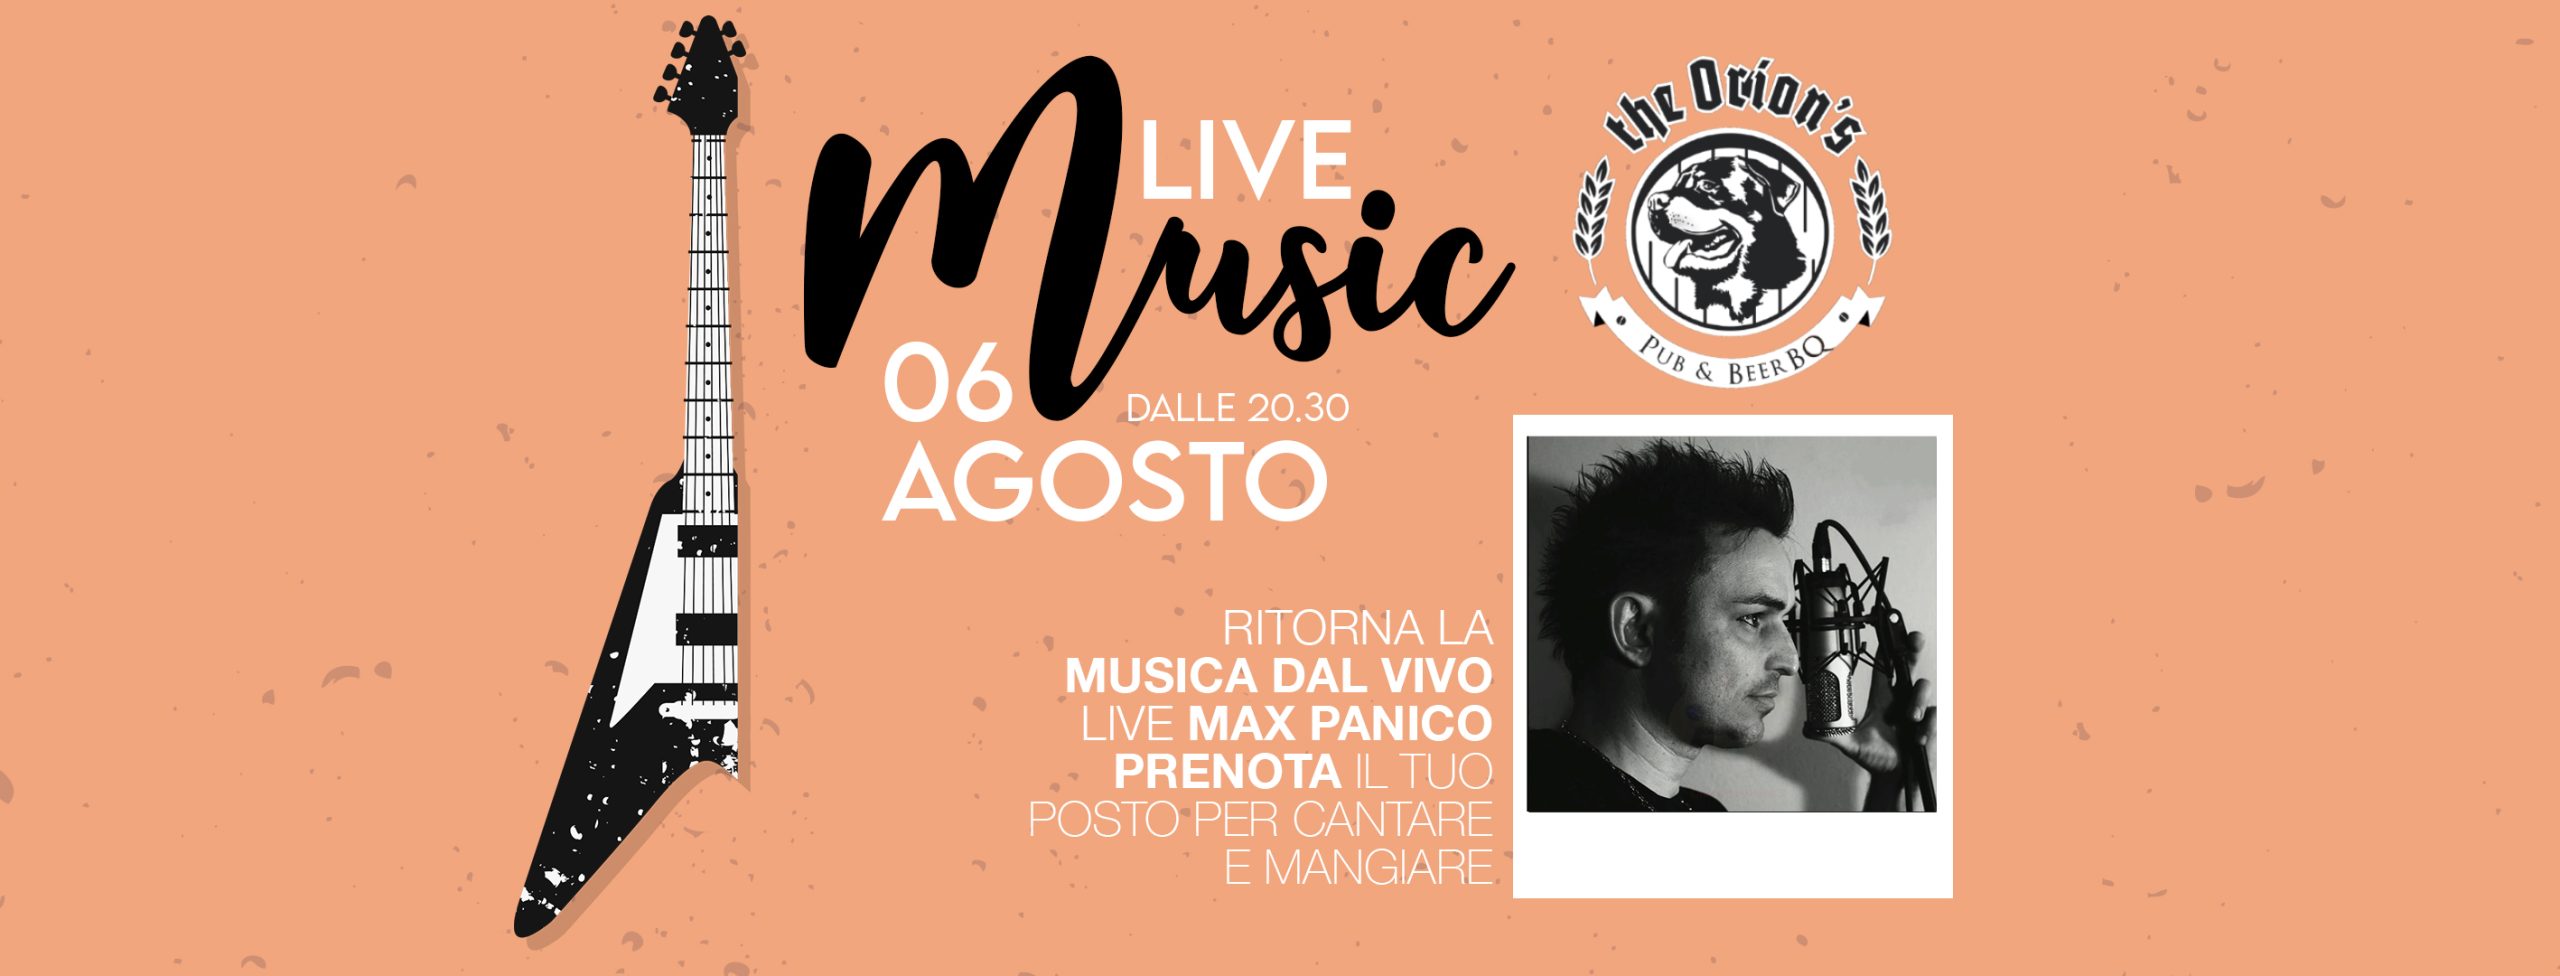 Max panico live, The Orion’s Pub - Pub & Beer BQ, Sevegliano, Udine